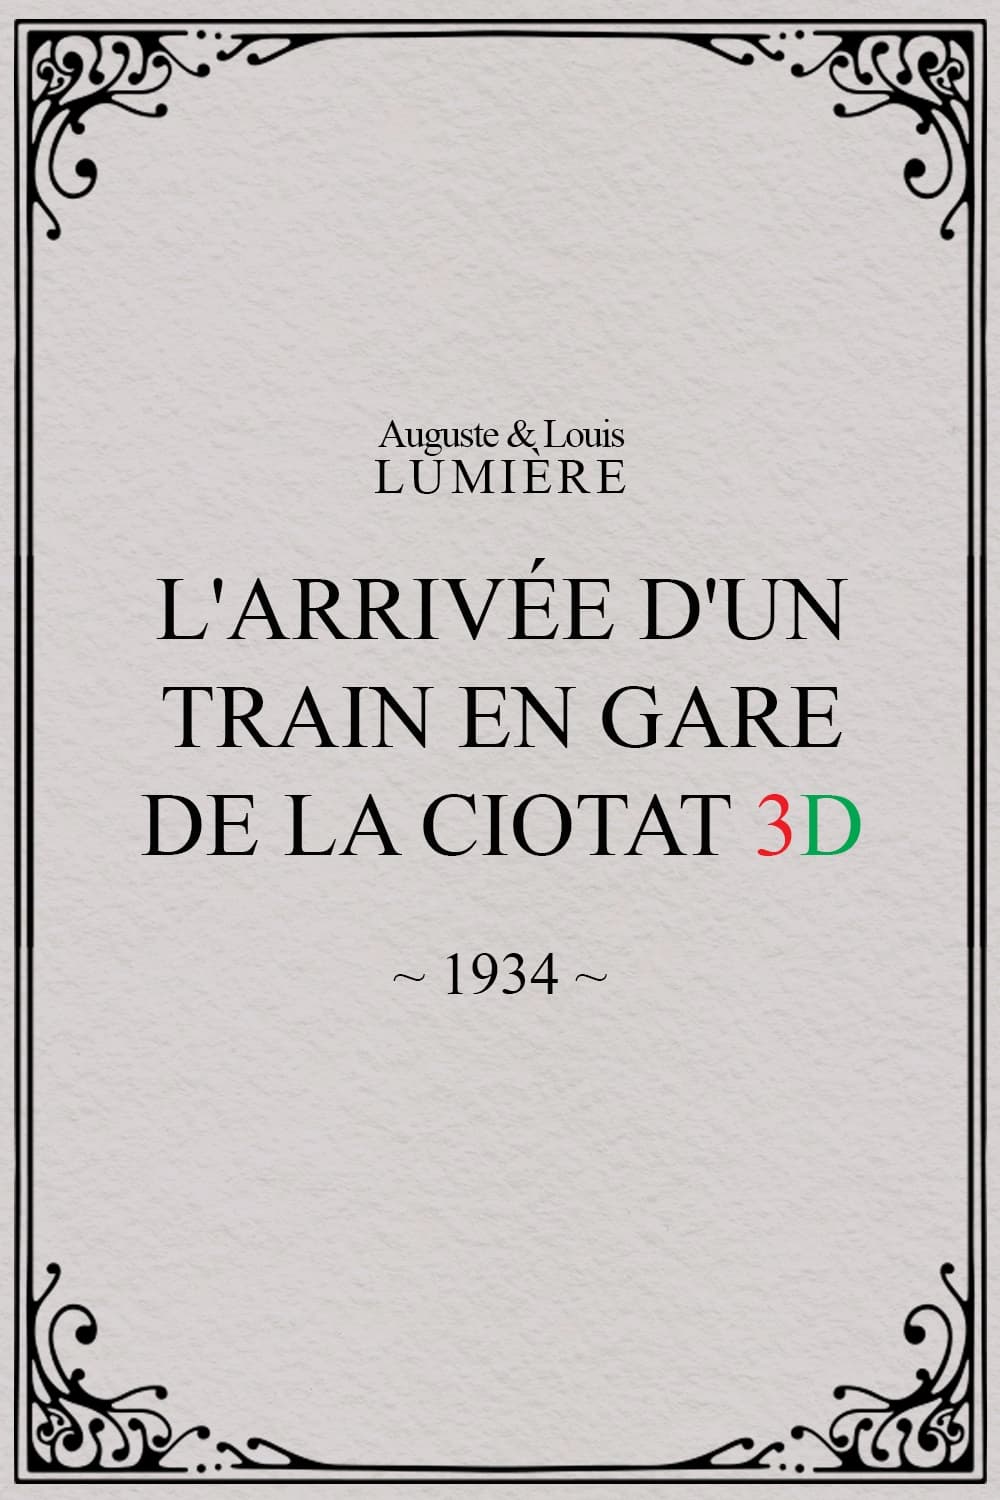 The Arrival of a Train at La Ciotat 3D